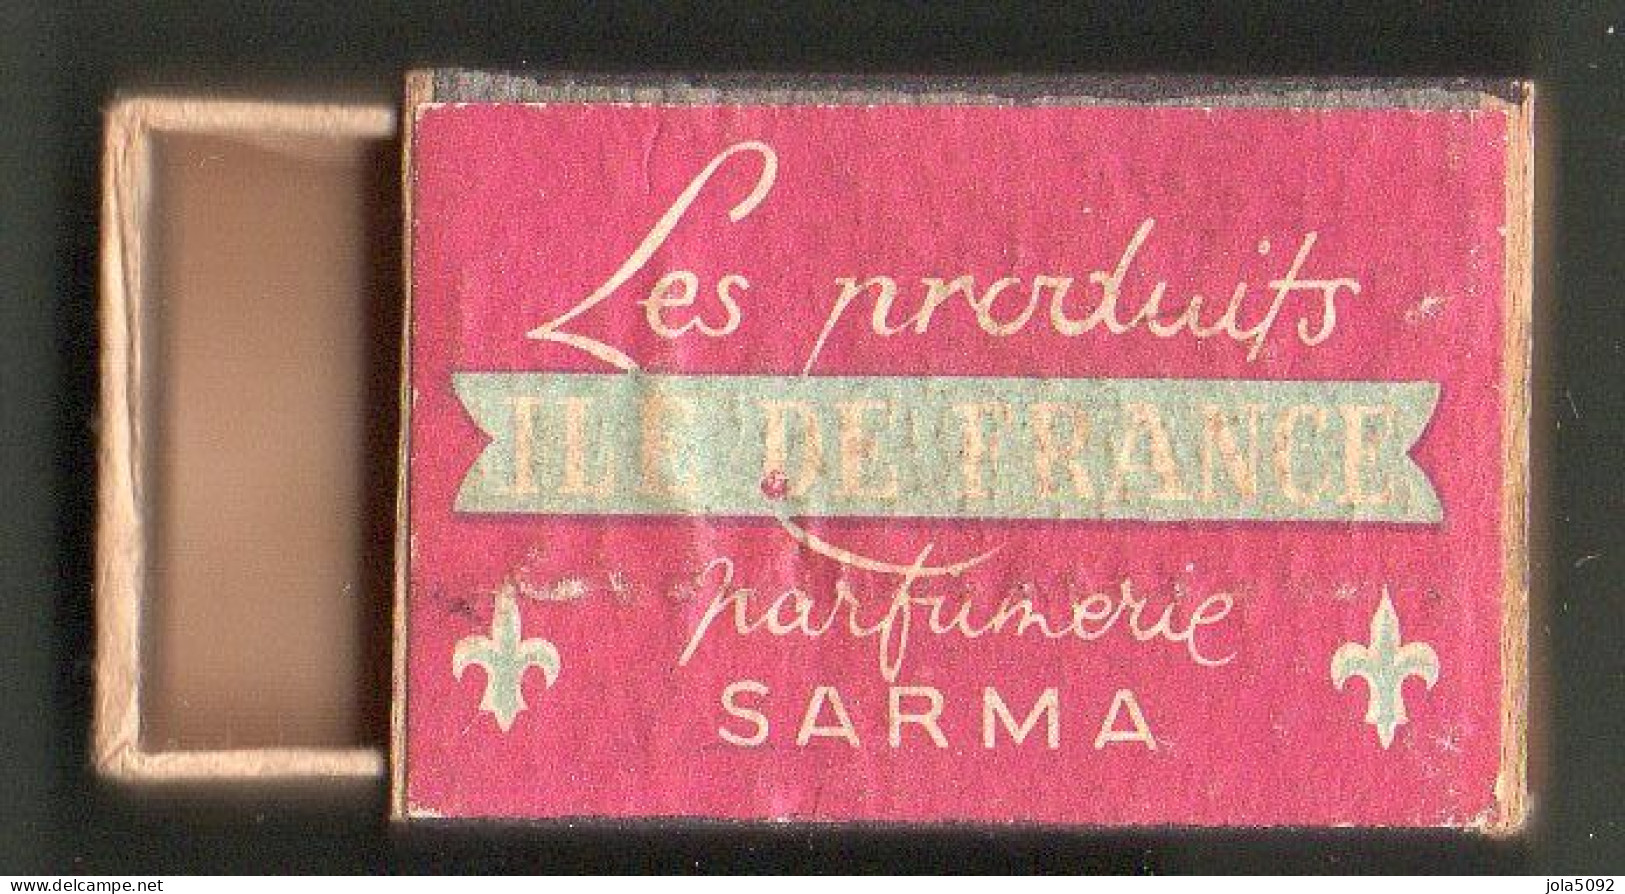 Boîte D'Allumettes - ILE DE FRANCE - PARFUMS SARMA - Zündholzschachteln